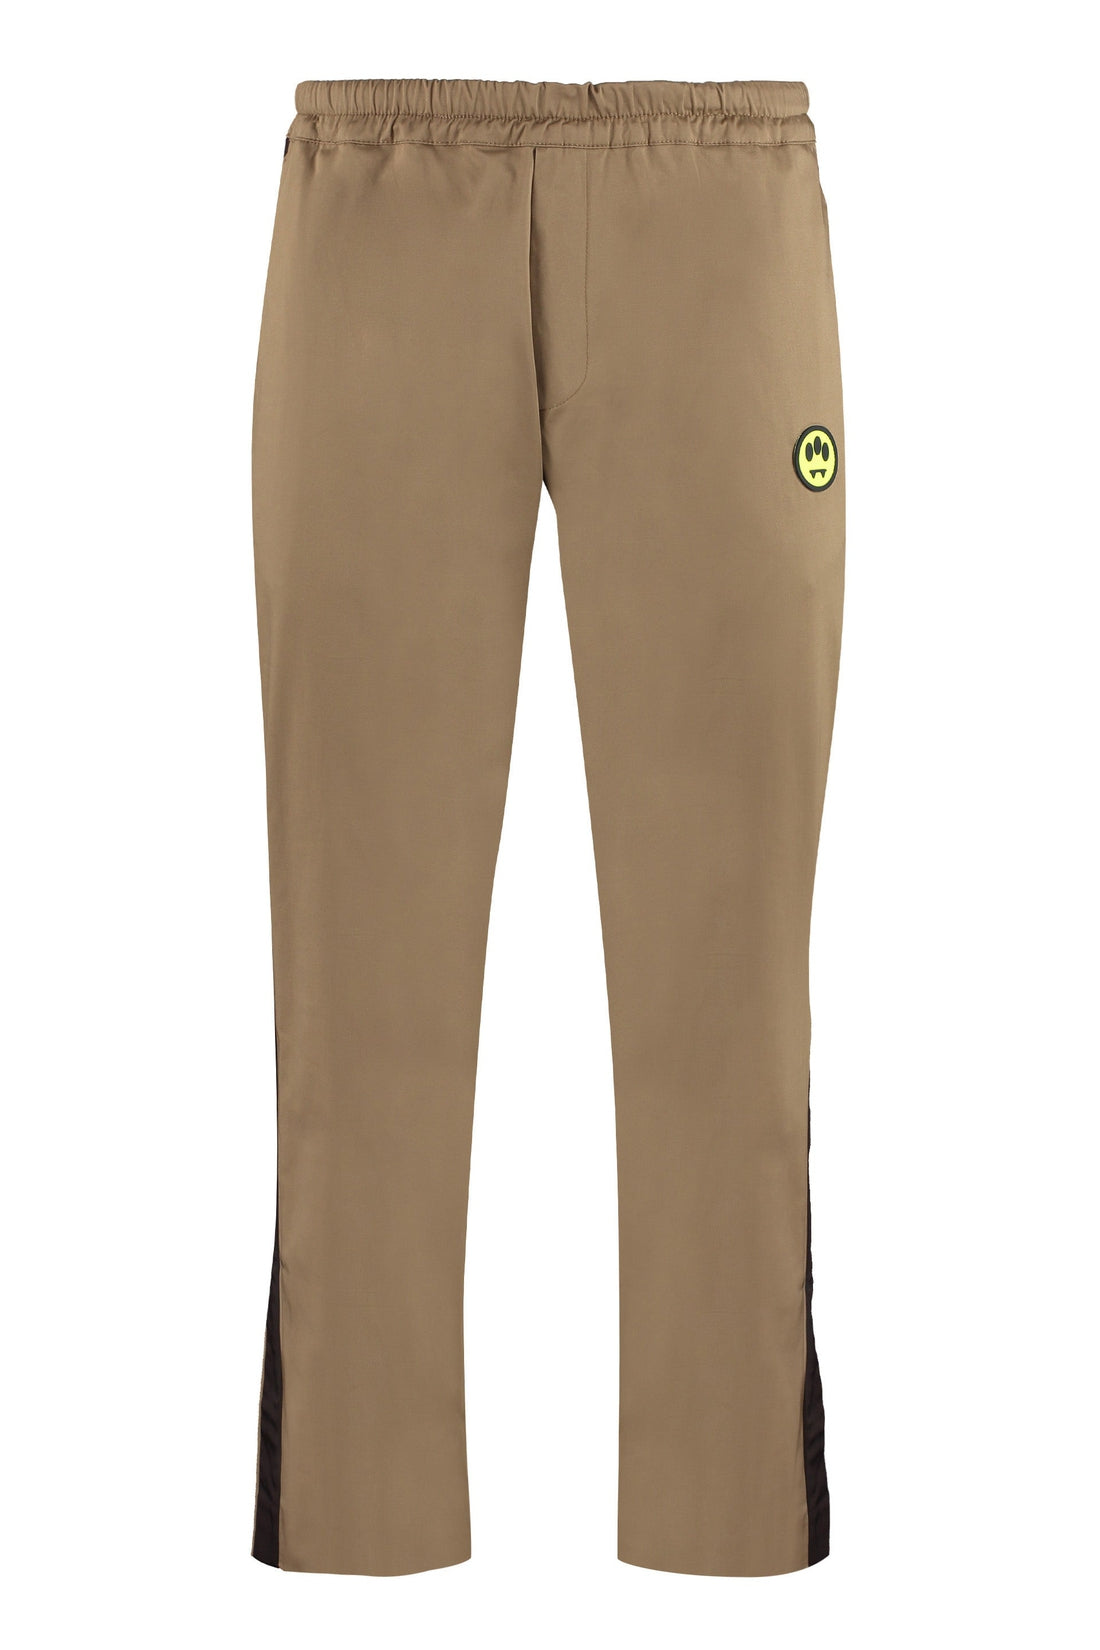 Barrow-OUTLET-SALE-Cotton gabardine trousers-ARCHIVIST